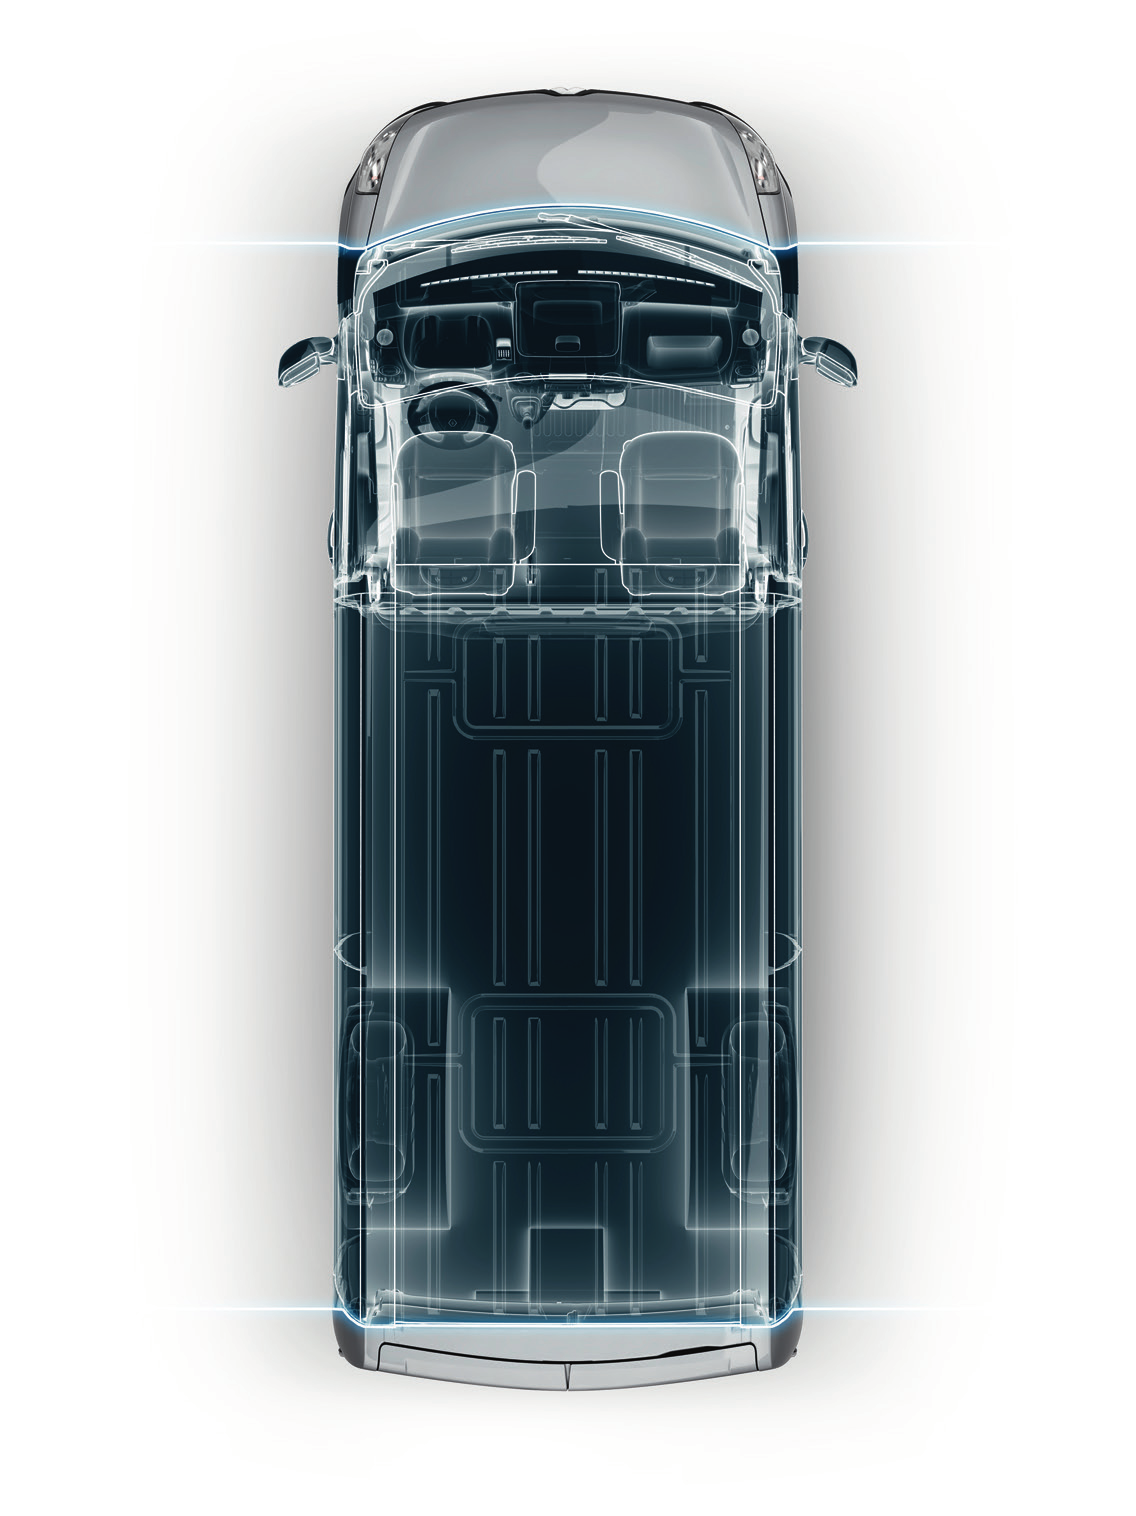 Renault Master Dostępny jest z czterema jednostkami napędowymi. Innowacyjna technologia Twin Turbo pozwala zmniejszyć zużycie paliwa do 6,9 l/100 km*.